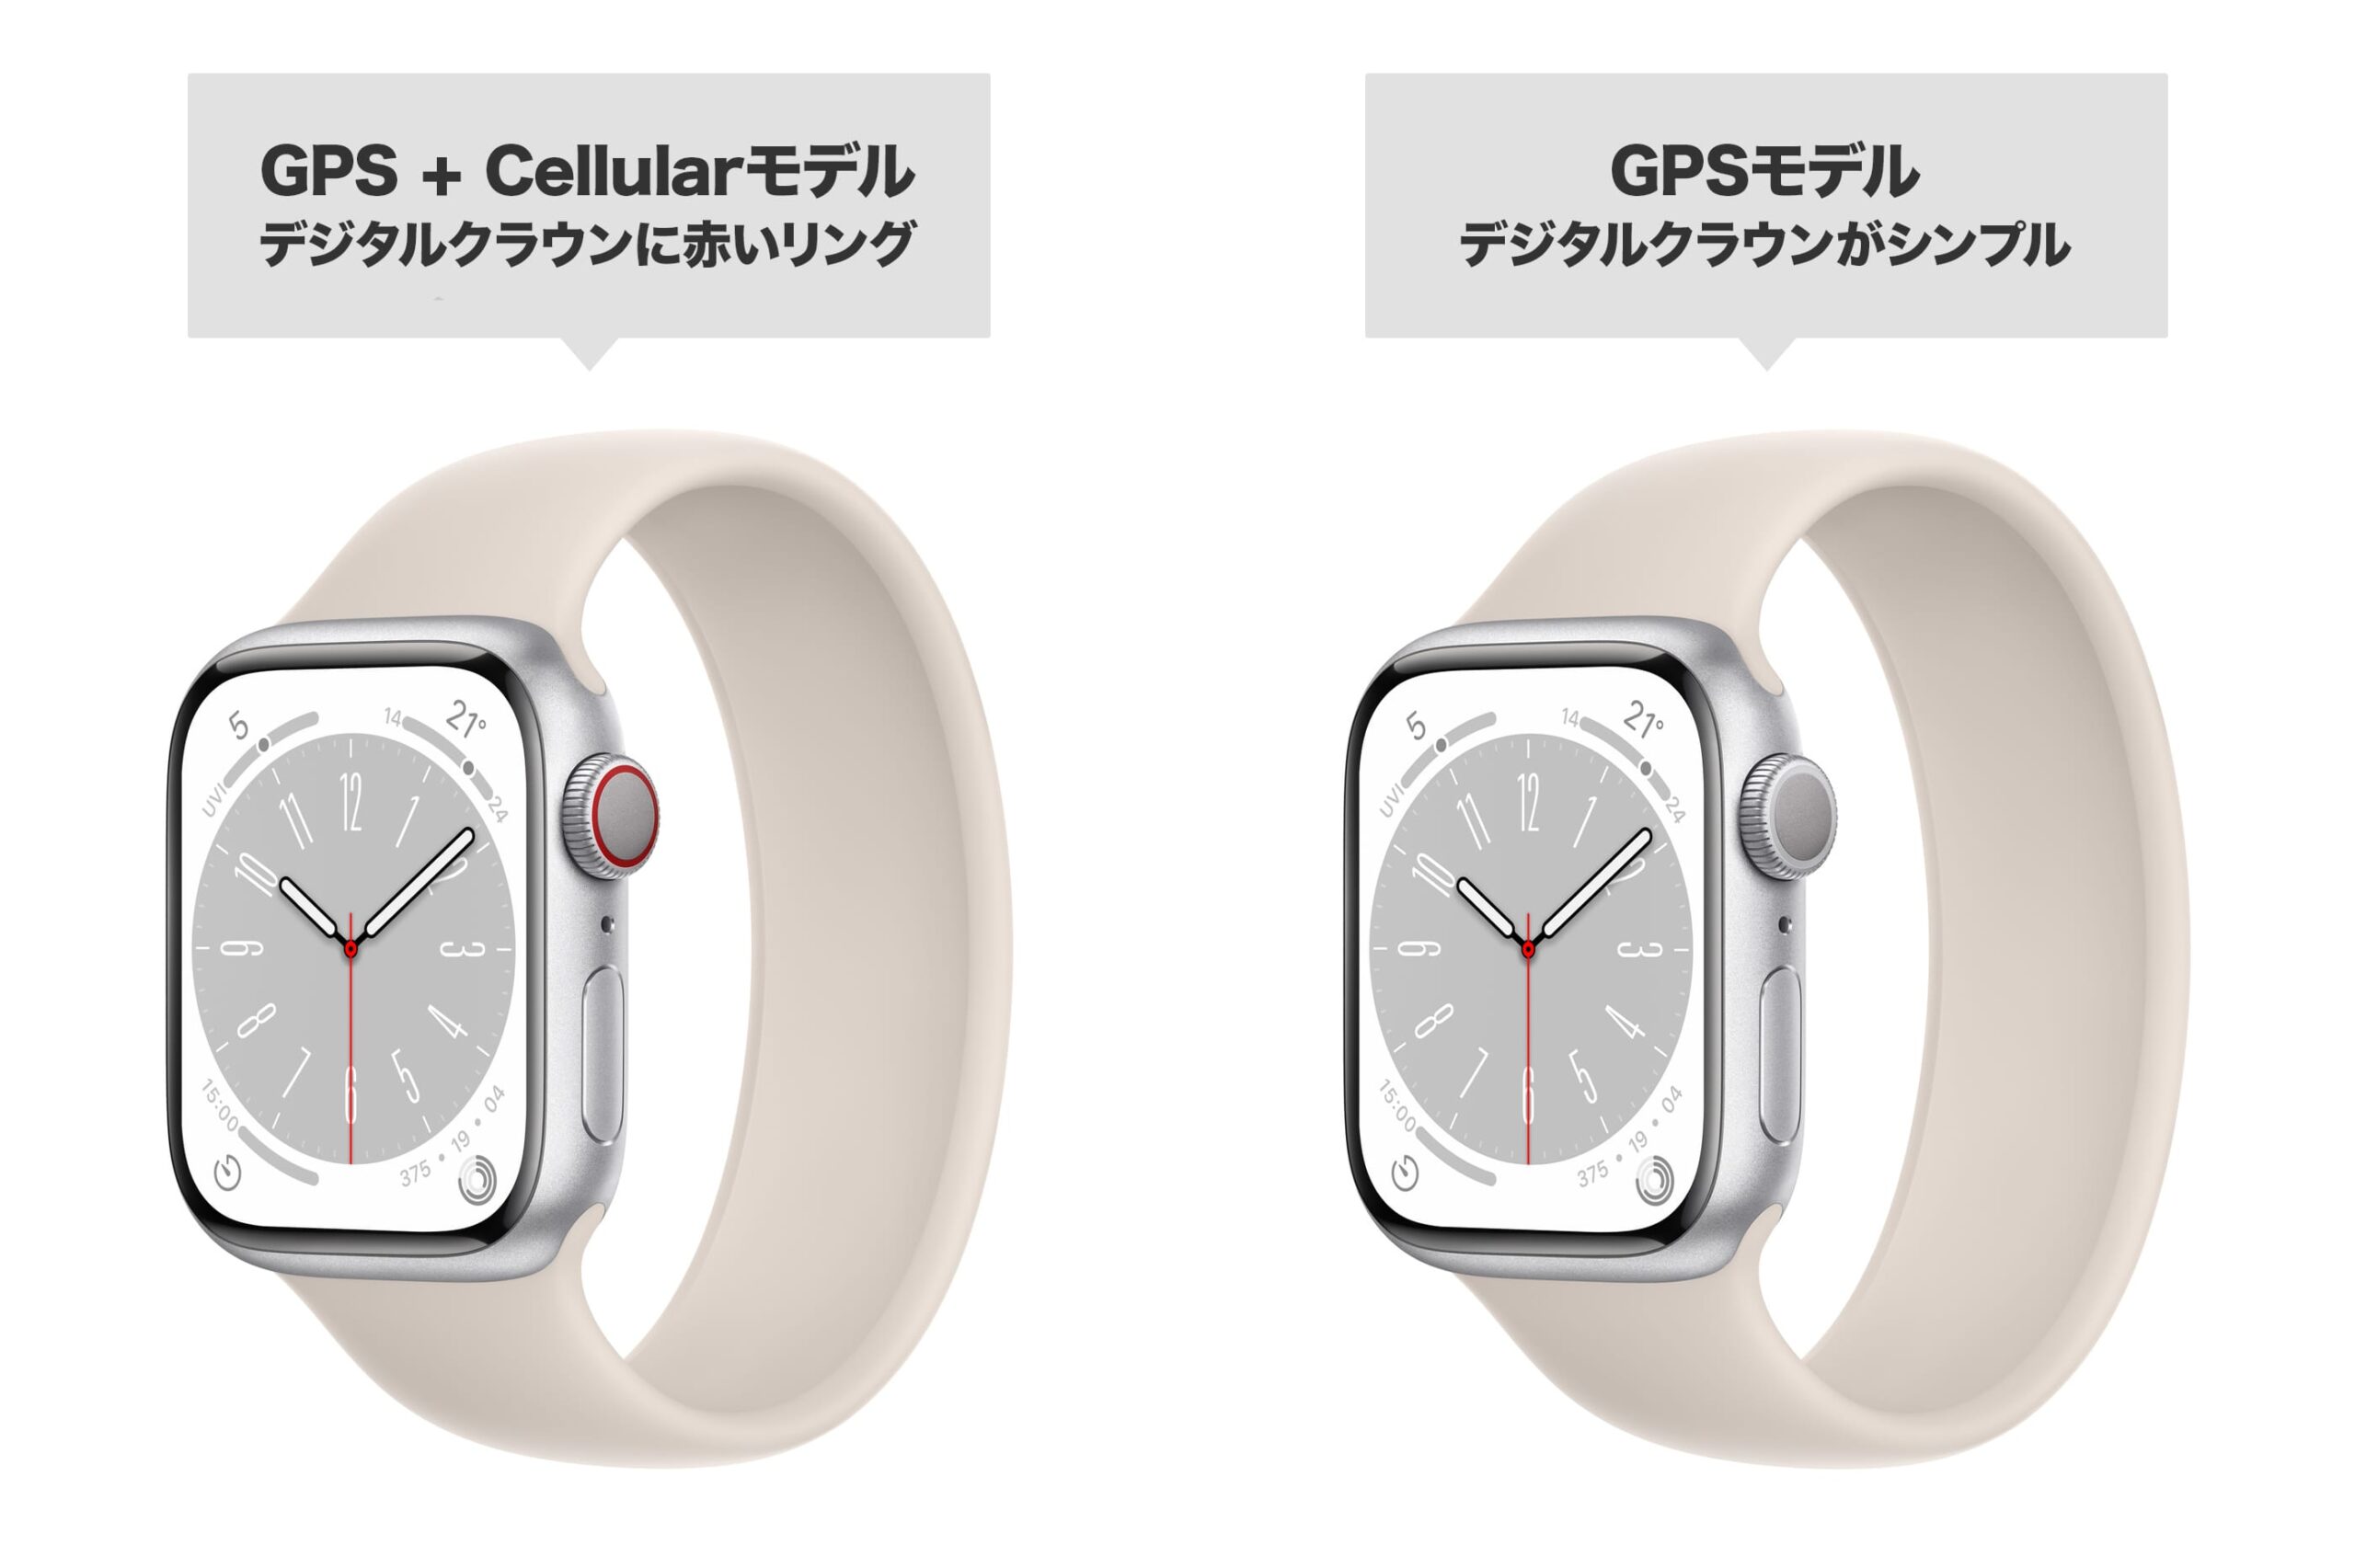 GPS + CellularモデルのApple Watchはデジタルクラウンに赤いリングがあるが、GPSモデルのApple Watchのデジタルクラウンはシンプルなデザイン